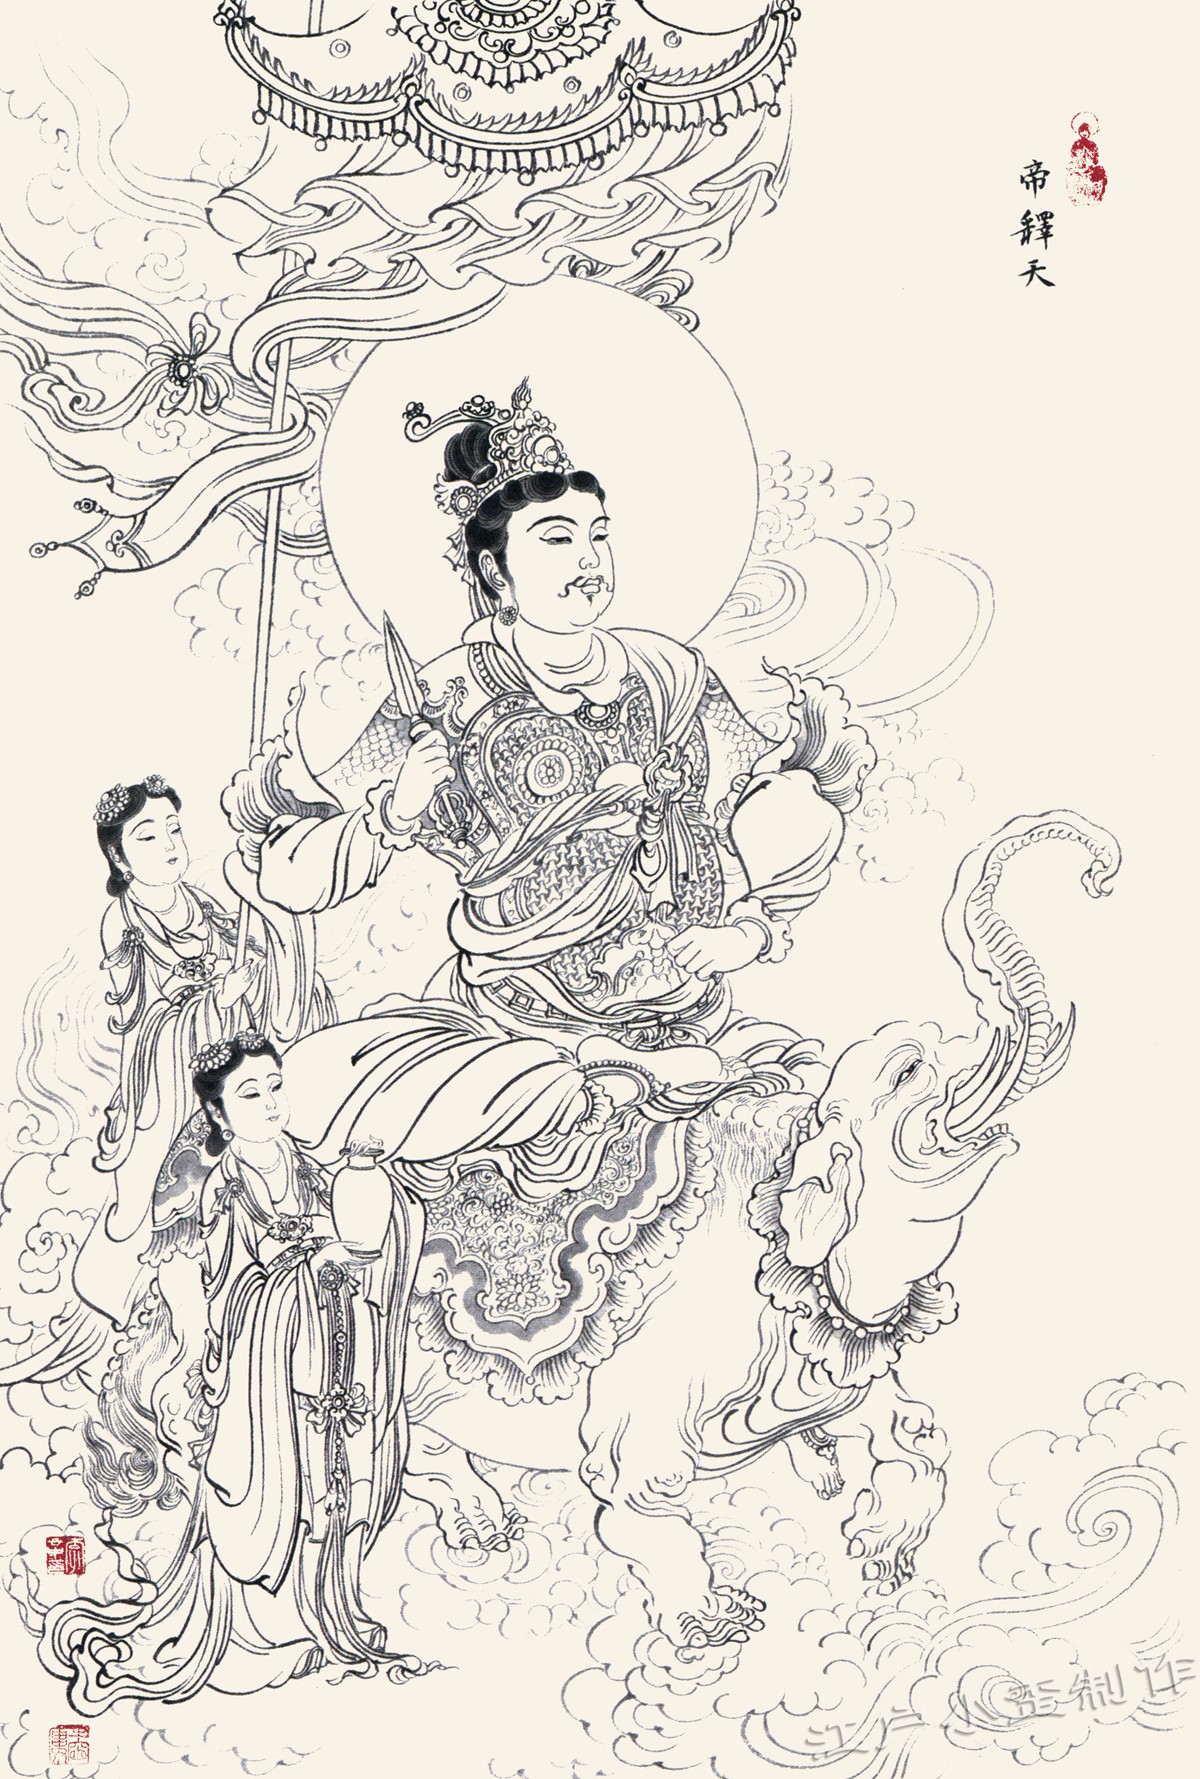 金庸小说天龙八部，书名中藏着佛教的大智慧